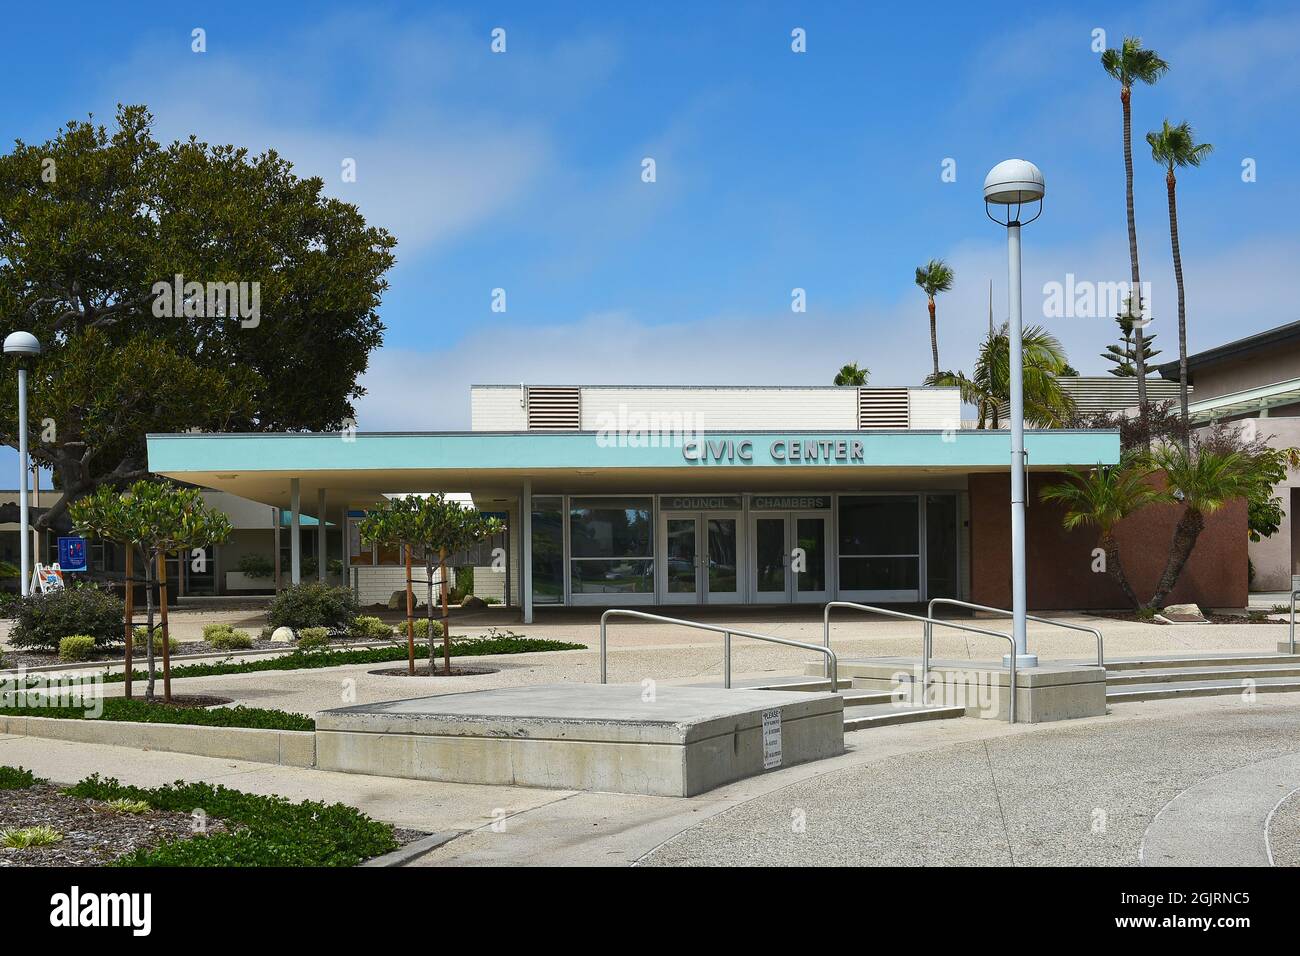 REDONDO BEACH, CALIFORNIE - 10 septembre 2021 : les chambres du Conseil dans le centre civique, dans la région de South Bay dans la région du Grand Los Angeles. Banque D'Images